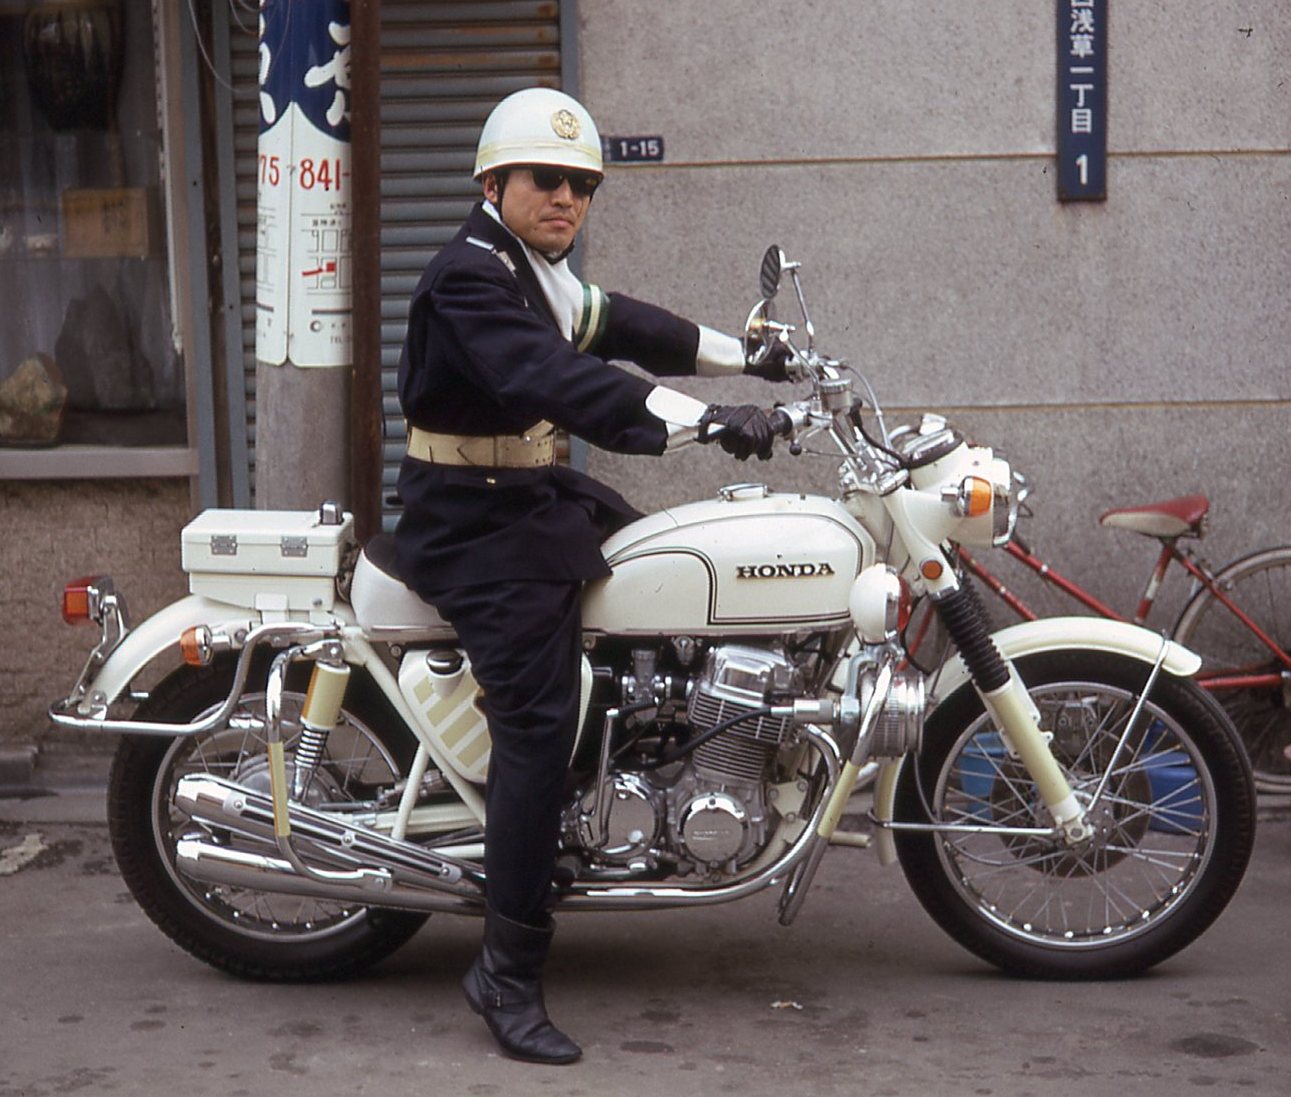 海外の反応 1970年に撮影された日本の白バイ隊員がカッコいい 海外ピーポー